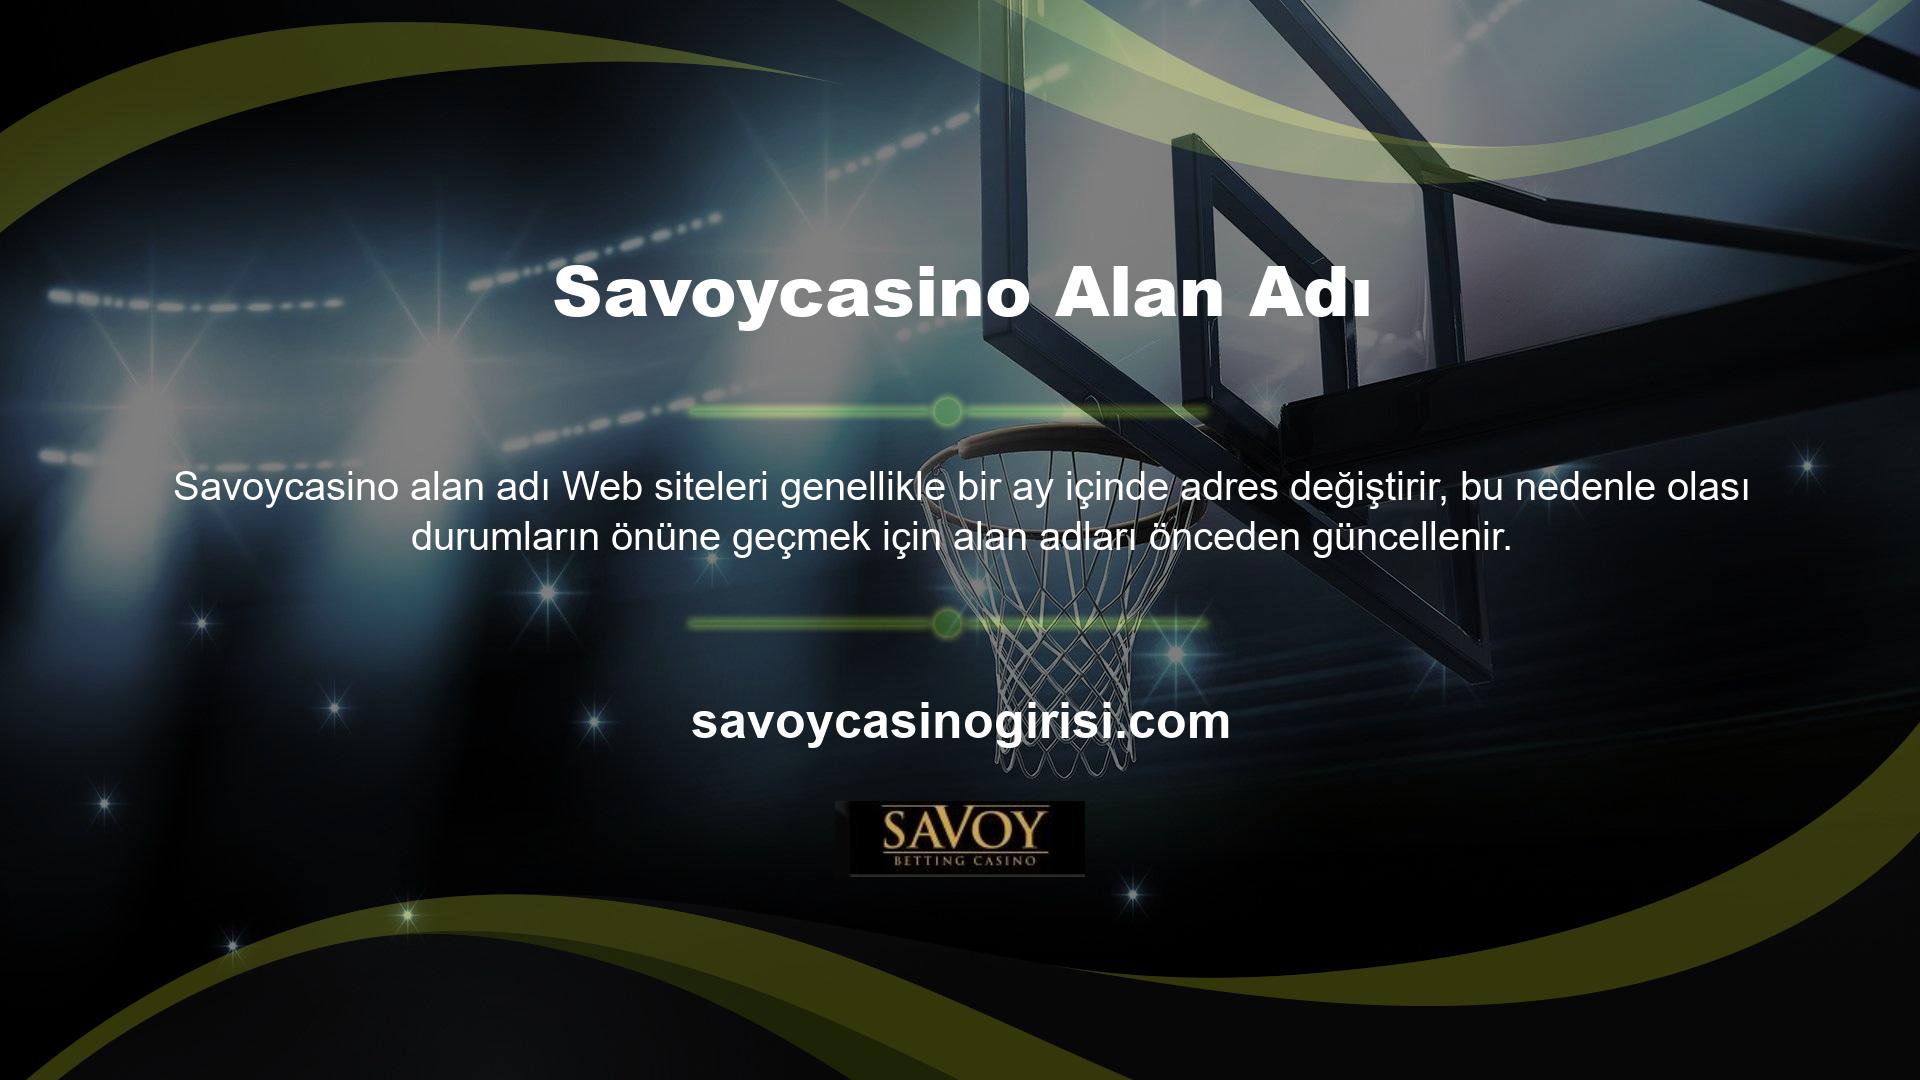 Savoycasino web sitesine, adresi seri numarası ile değiştirerek kolayca erişilebilir